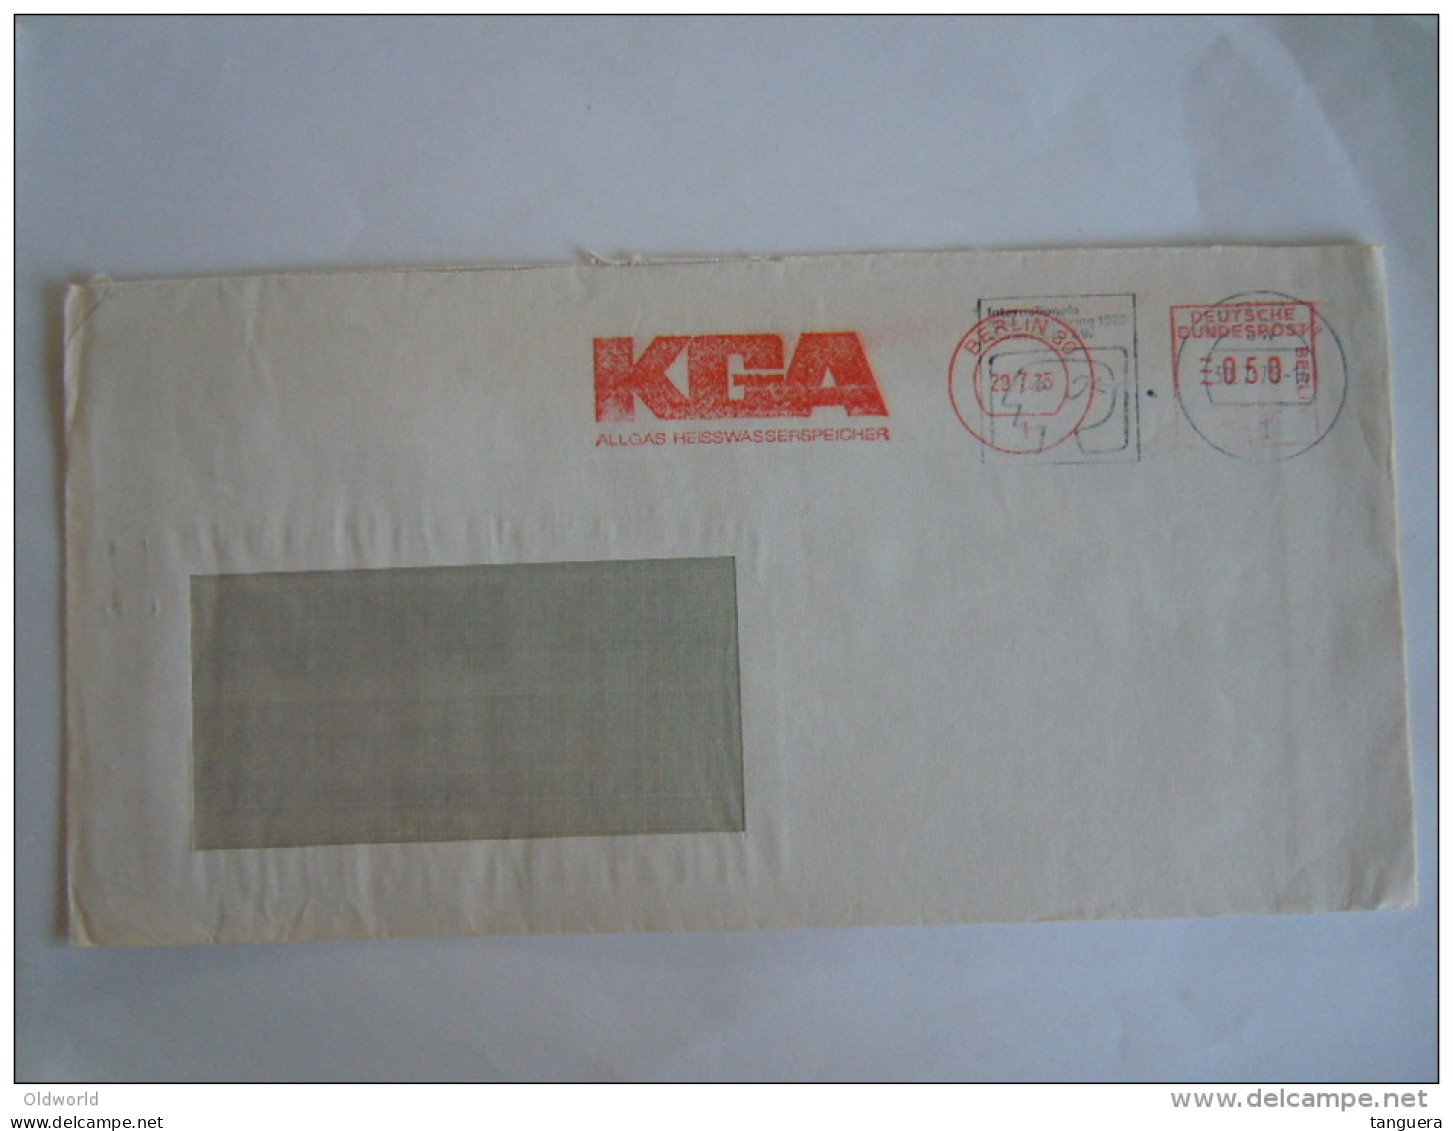 Germany Allemagne Brief Lettre Letter EMA 1975 KGA Allgas Heisswasserspeicher Rare 2 Cachets Superposés Berlin - Macchine Per Obliterare (EMA)